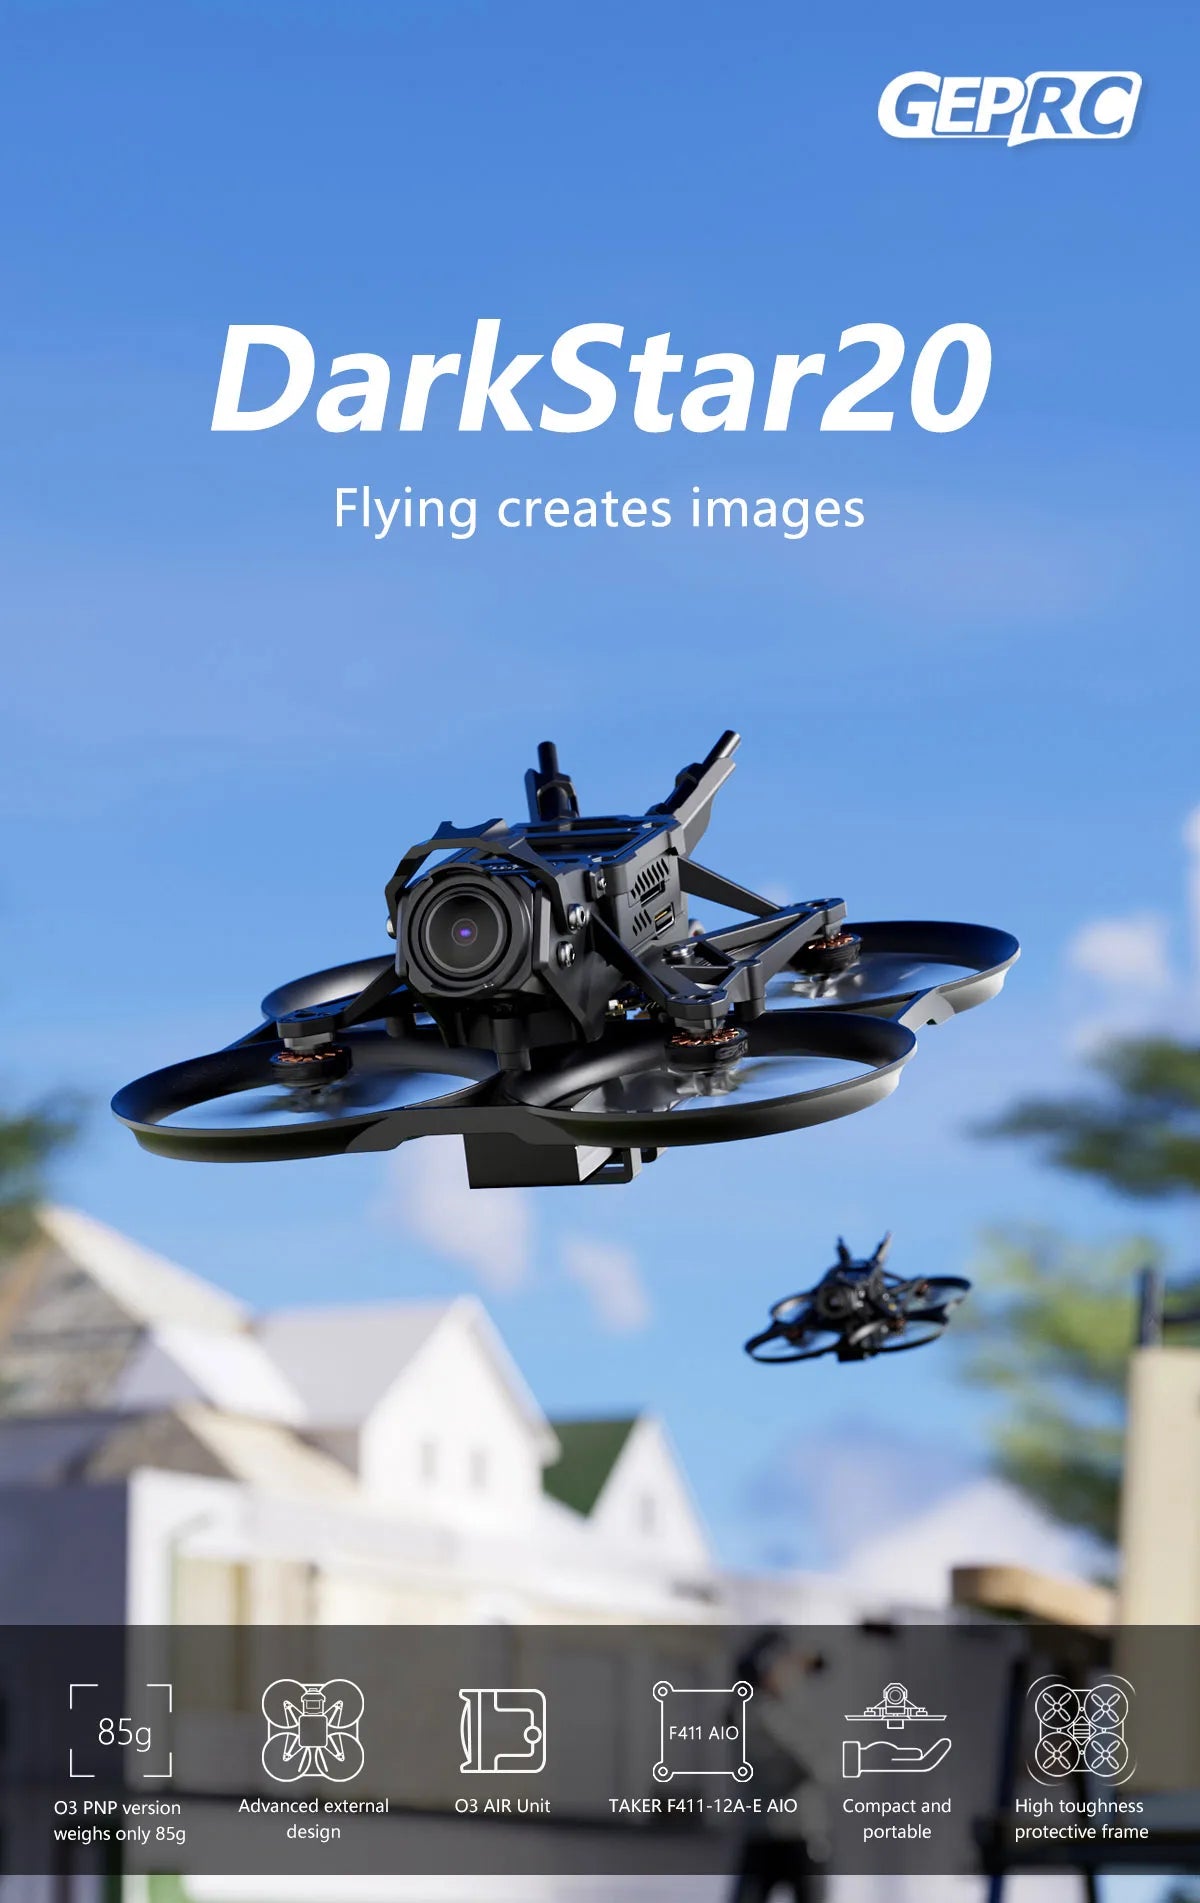 GEPRC DarkStar20 HD Wasp FPV, GEPRC DarkStar2o Flying creates images 85g F411 AIO